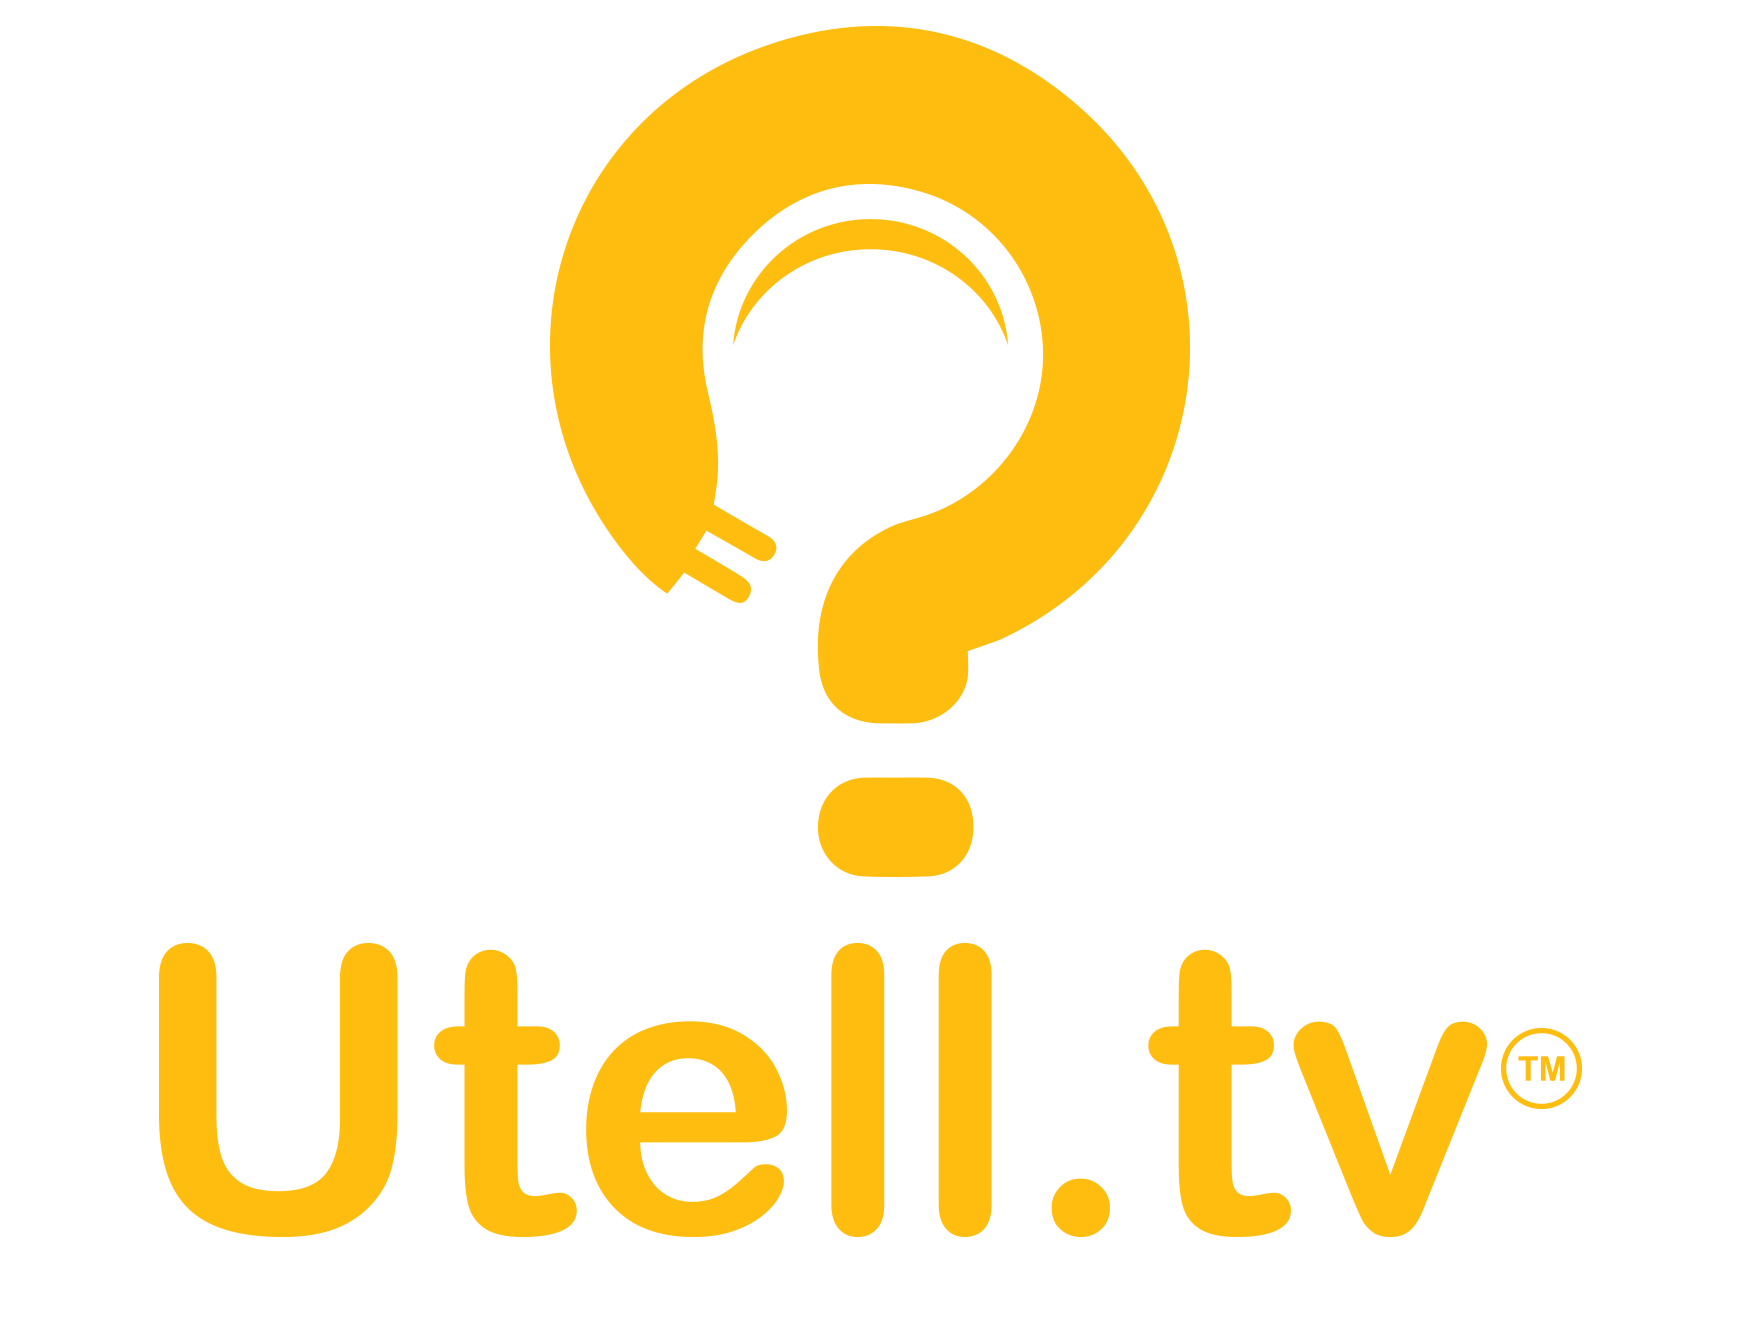 UTellTheStory.com Logo